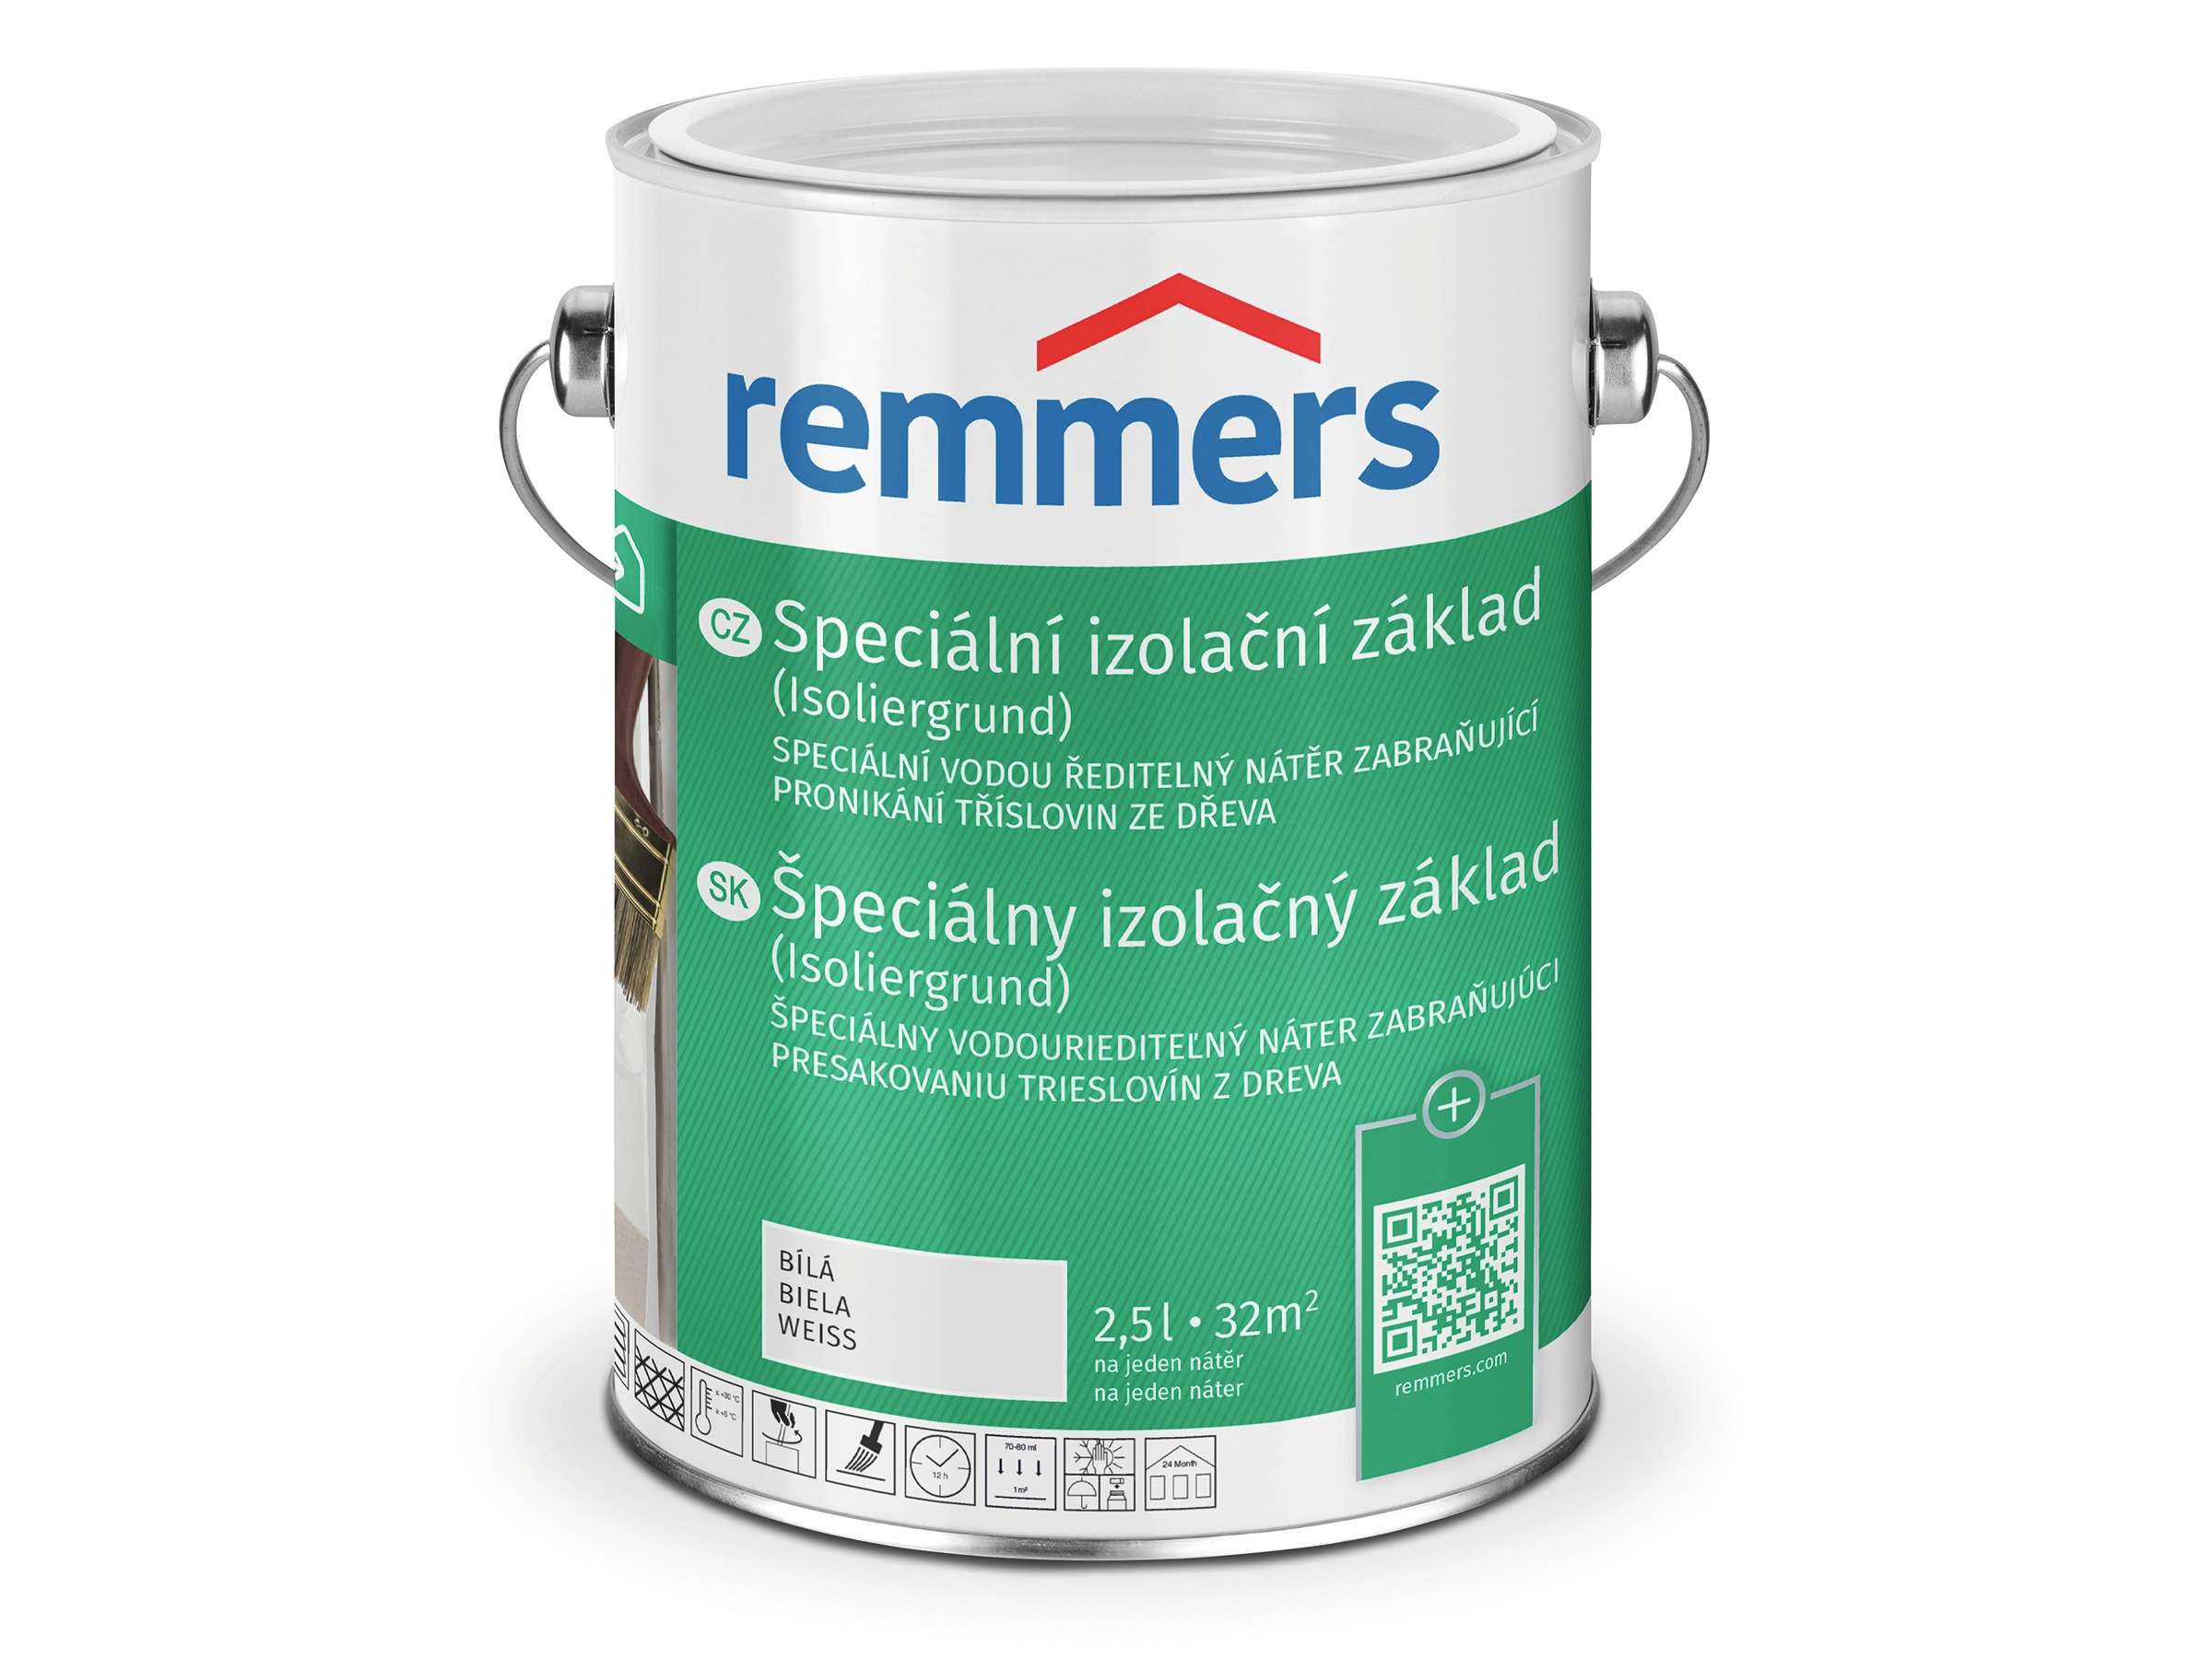 Remmers Speciální izolační základ * Remmers Isoliergrund 1